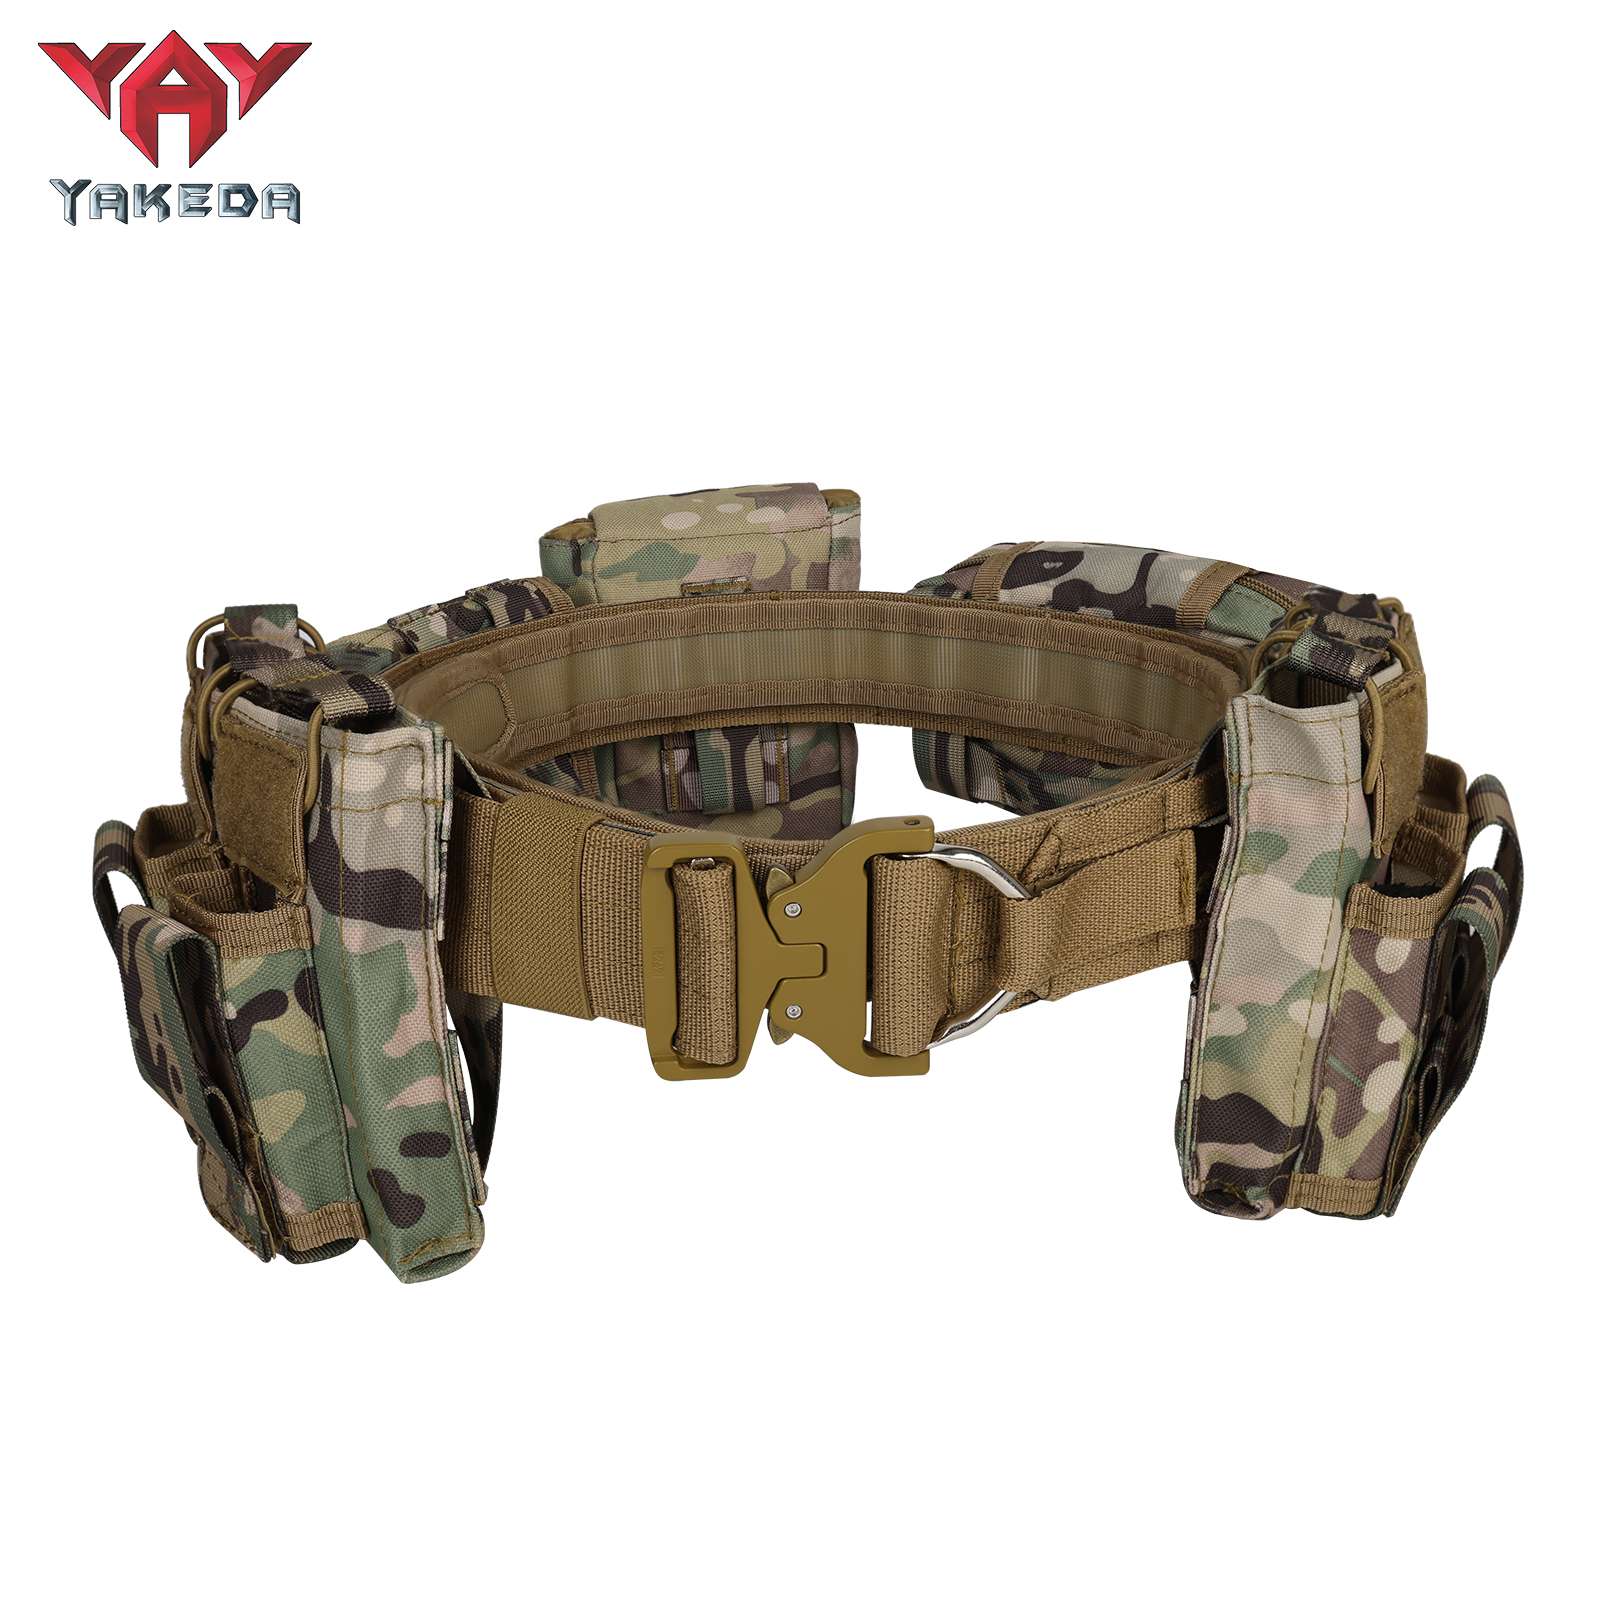 Yakeda MOLLE Cinturón de combate de liberación rápida con bolsas Juego de cinturón táctico interior y exterior de alta resistencia